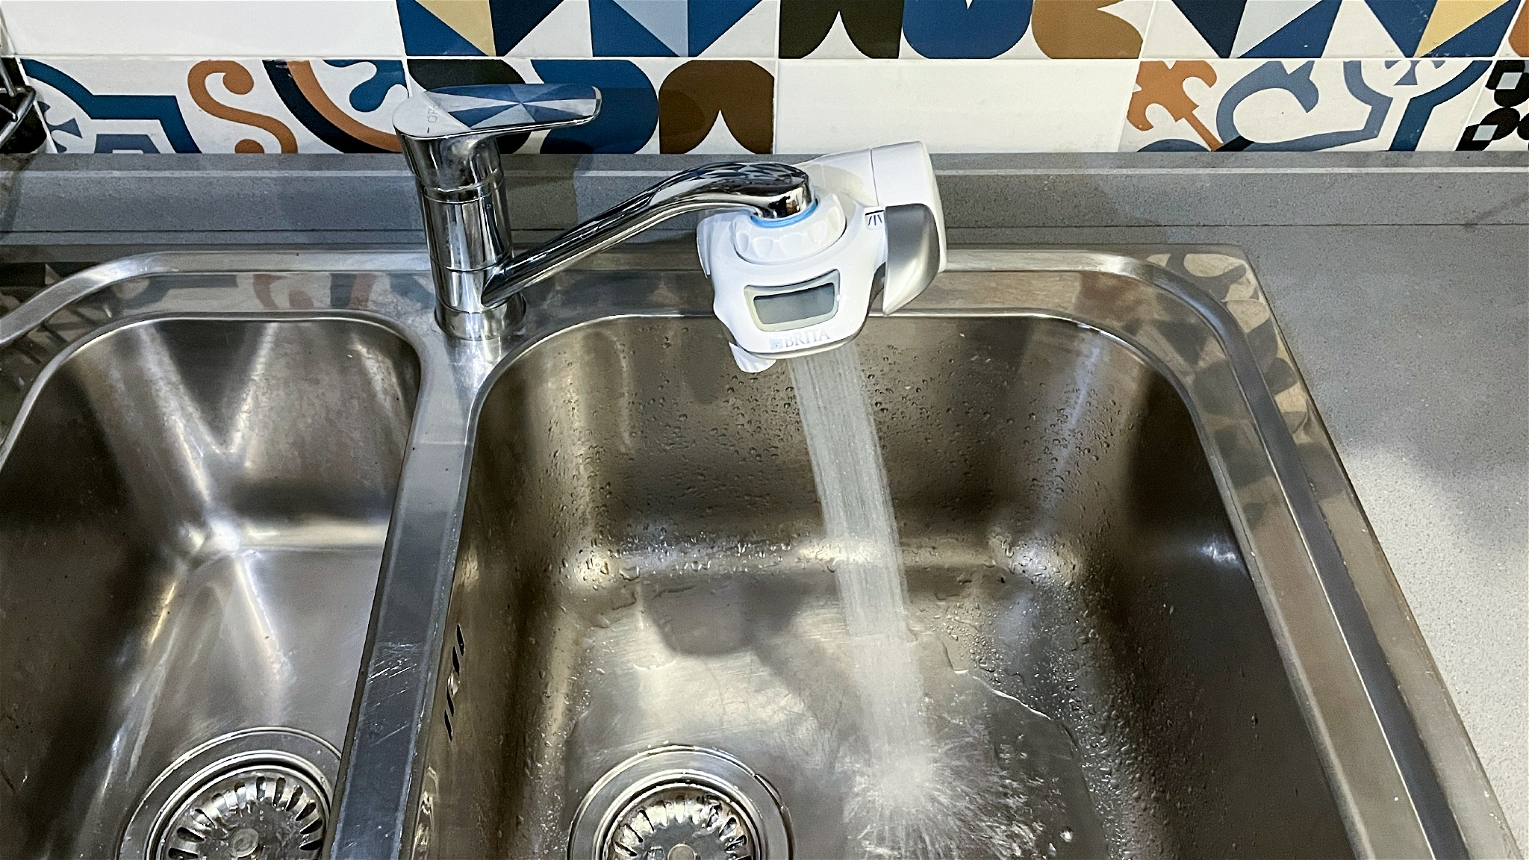 depuratore acqua casalingo brita in lavello cucina